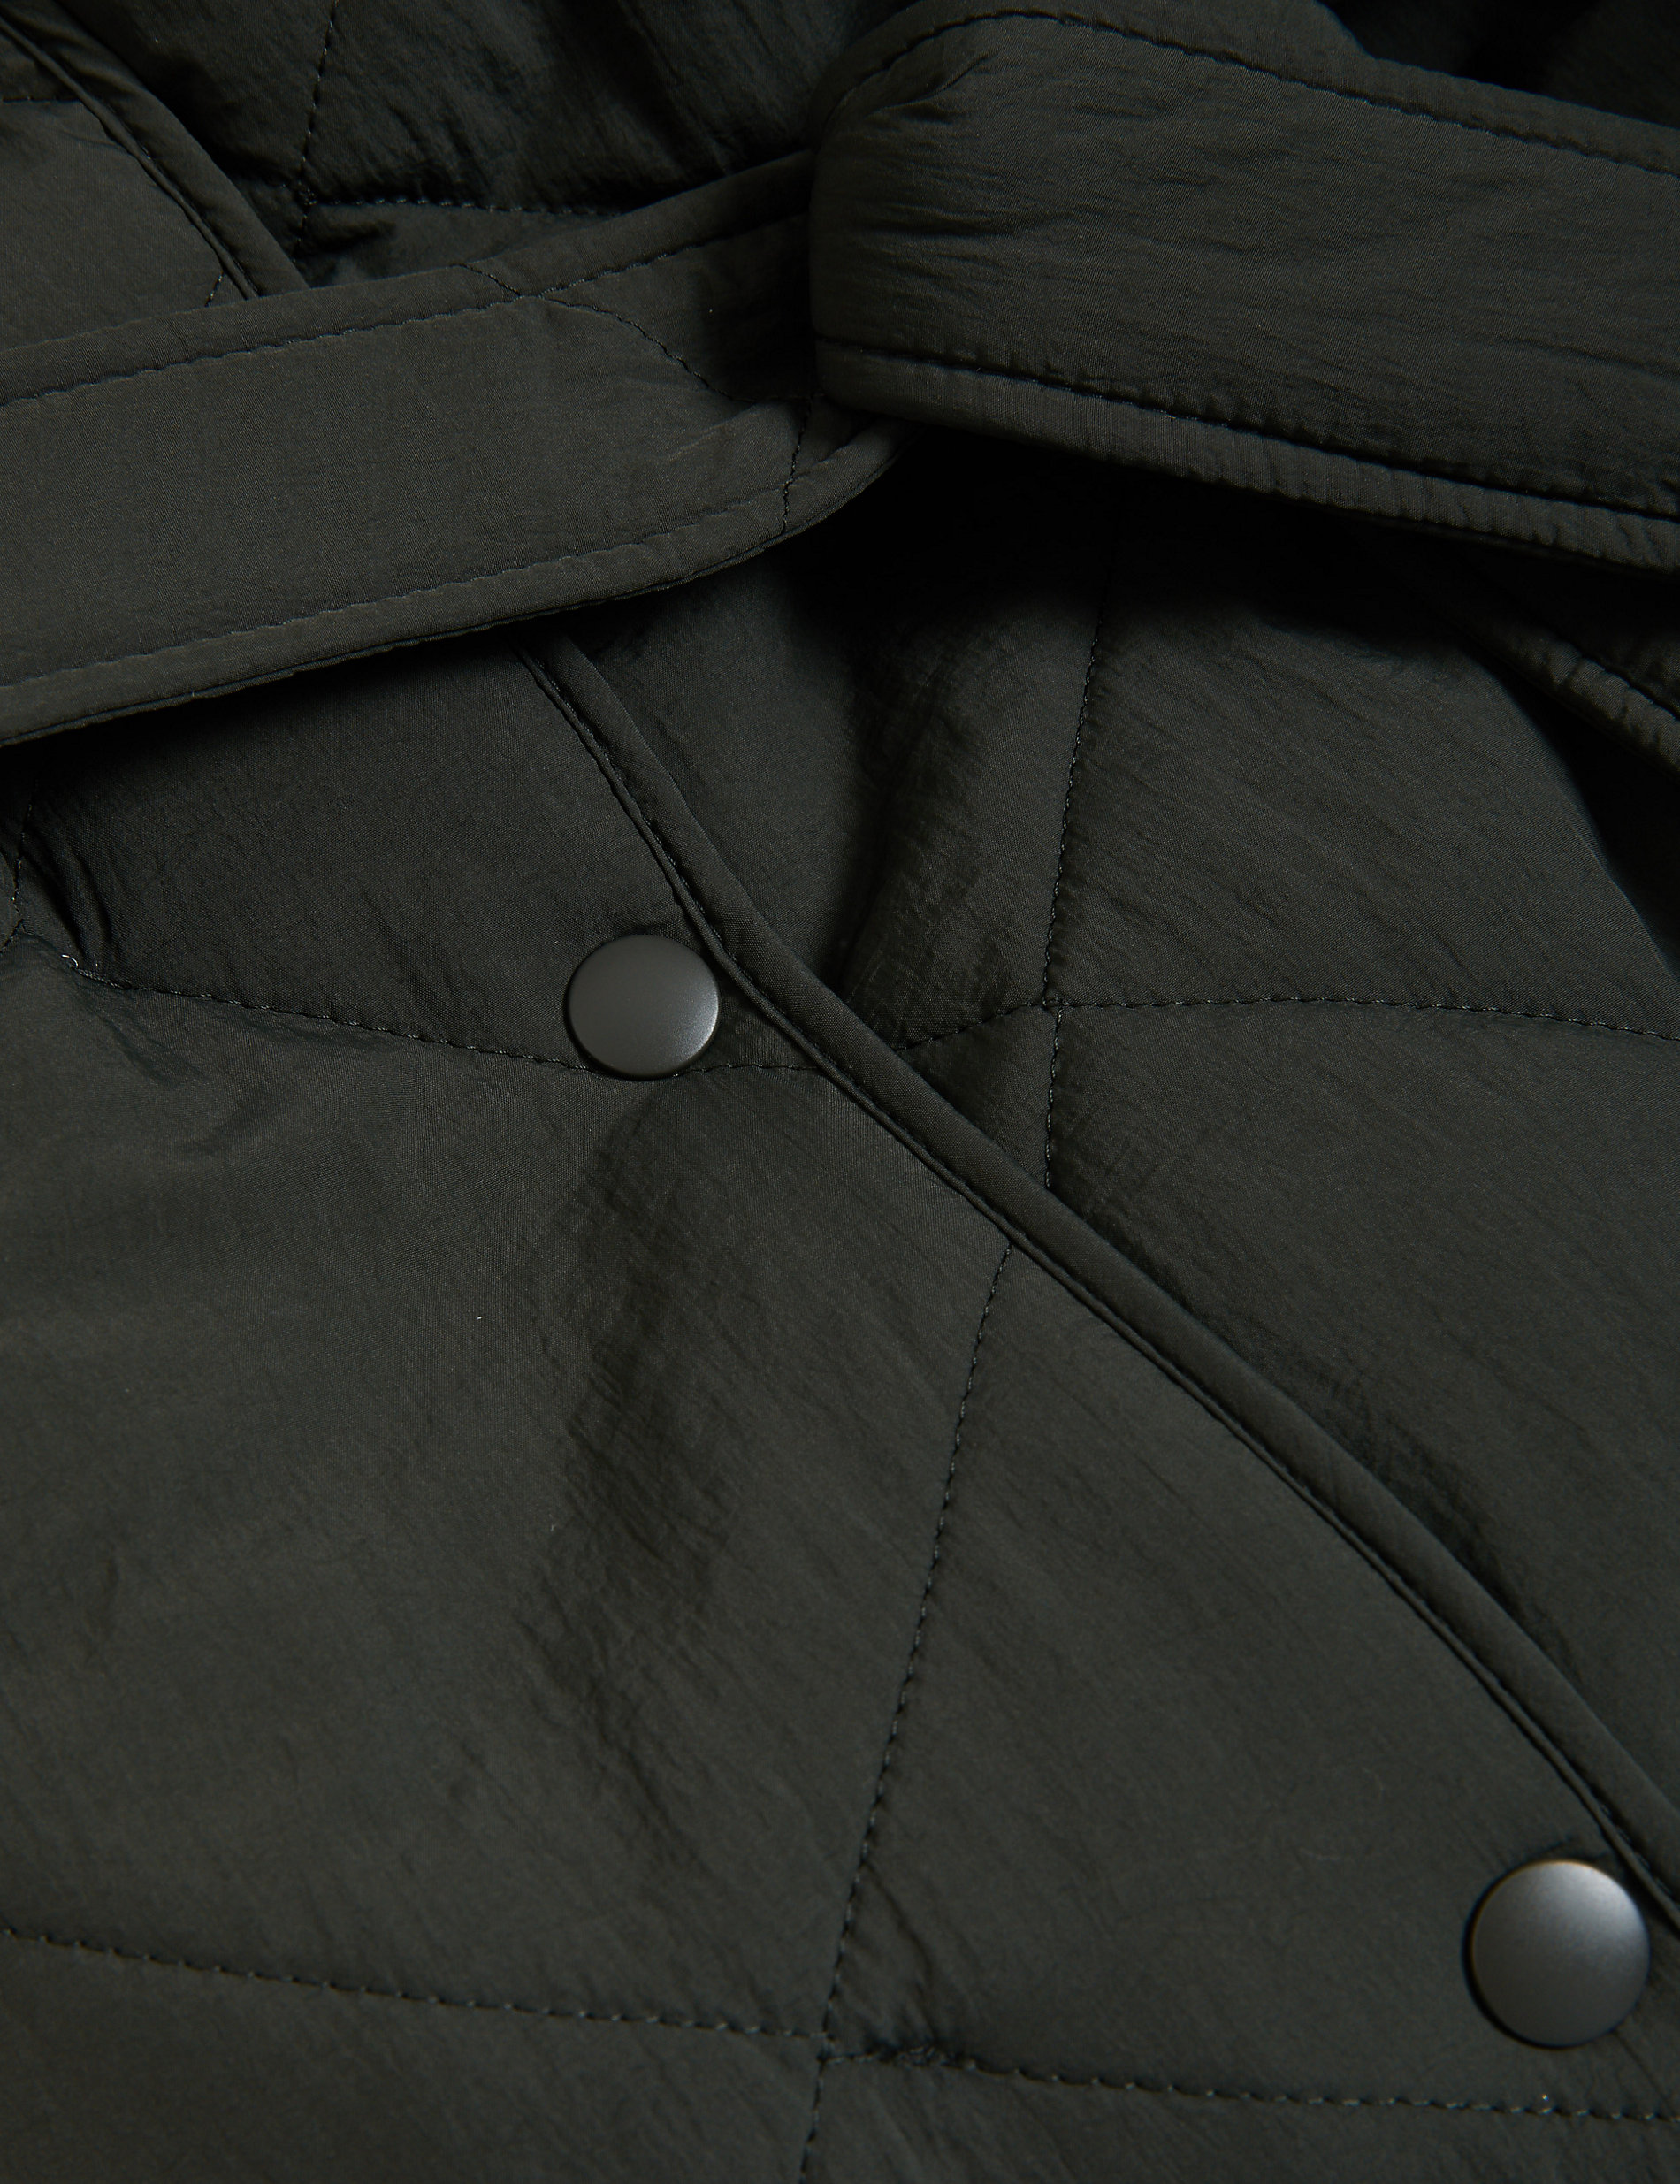 Manteau molletonné et ouatiné à motif texturé, doté de la technologie Stormwear™